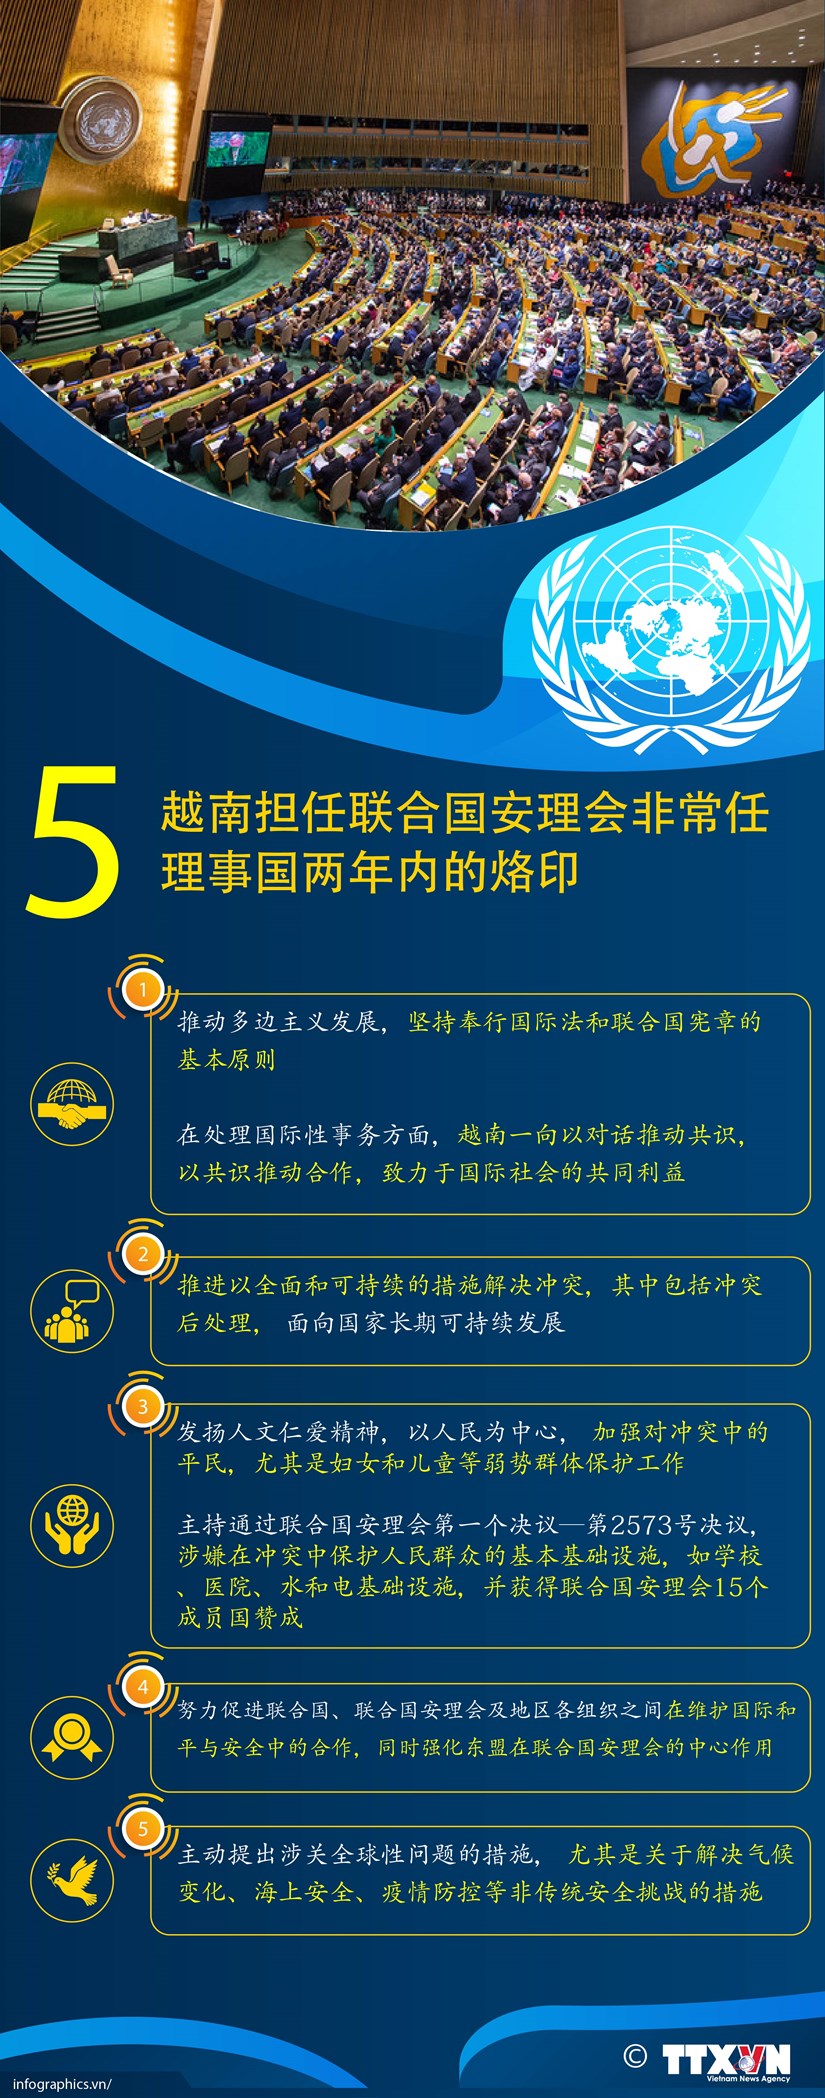 图表新闻：越南担任联合国安理会非常任理事国两年内的5大烙印 hinh anh 1